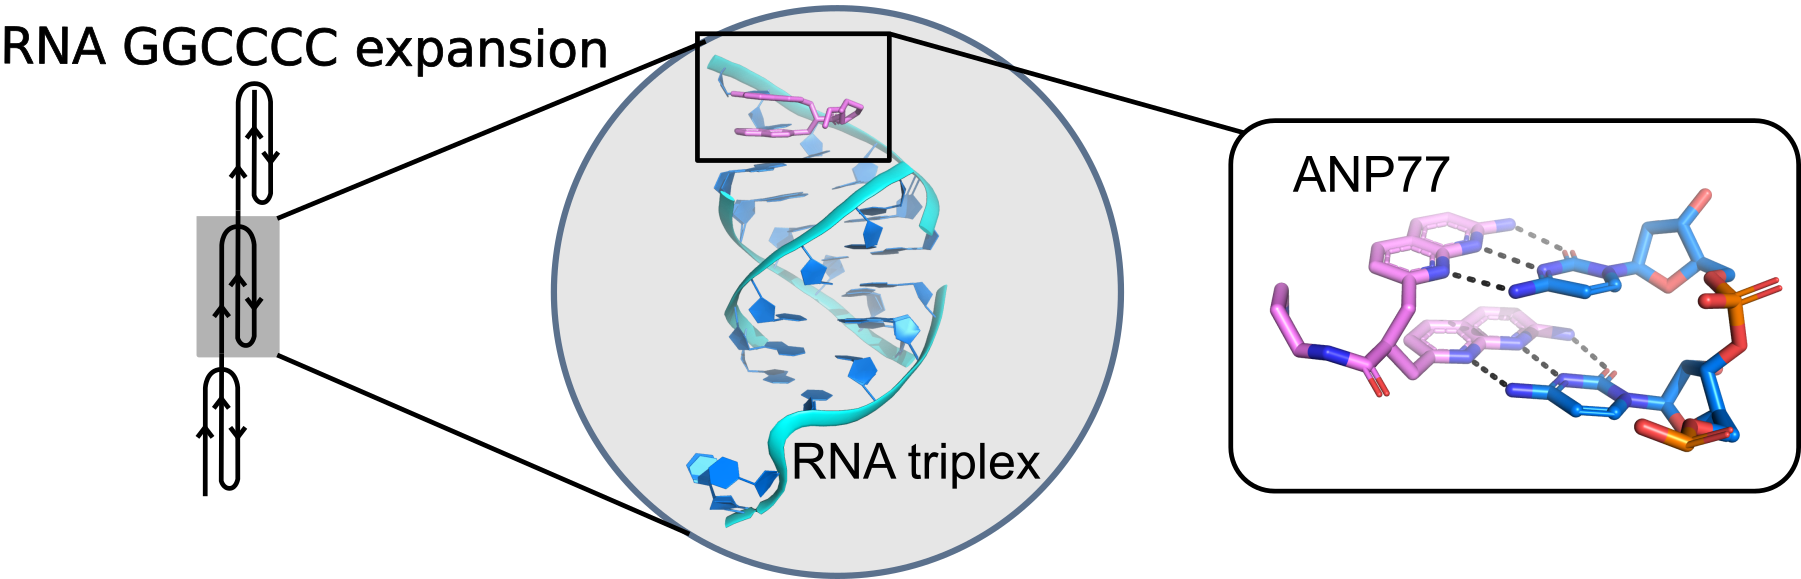 g2c4-interaction-with-ANP77. Na rysunku przedstawiono strukturę krystaliczną modelu RNA o sekwencji G2C4 oddziałującą z małą cząsteczką ligandu ANP77. W środkowej części, w kole, znajduje się model trójwymiarowy RNA składający się z czterech nici tworzący strukturę tripleksu z wystającymi dwiema resztami cytozyn na obu końcach cząsteczki. Na jednym z nich związany jest ligand. Szczegółowe oddziaływania pomiędzy resztami cytozyn a ligandem można zobaczyć po prawej stronie. Ligand zbudowany jest z dwóch jednostek naftyrydyn połączonych krótkim linkerem. Funkcje azotowe naftyrydyn są uwikłane w tworzenie oddziaływań wodorowych z dwiema resztami cytozyn. Ligand z cytozynami tworzą dwie pseudokanoniczne pary typu Watson-Crick. Po lewej stronie przedstawiony jest model, w którym zwielokrotnione powtórzenia heksanukleotydowe G2C4 tworzą strukturę tripleksu. Model został wygenerowany na podstawie przedstawionych badań krystalograficznych. 